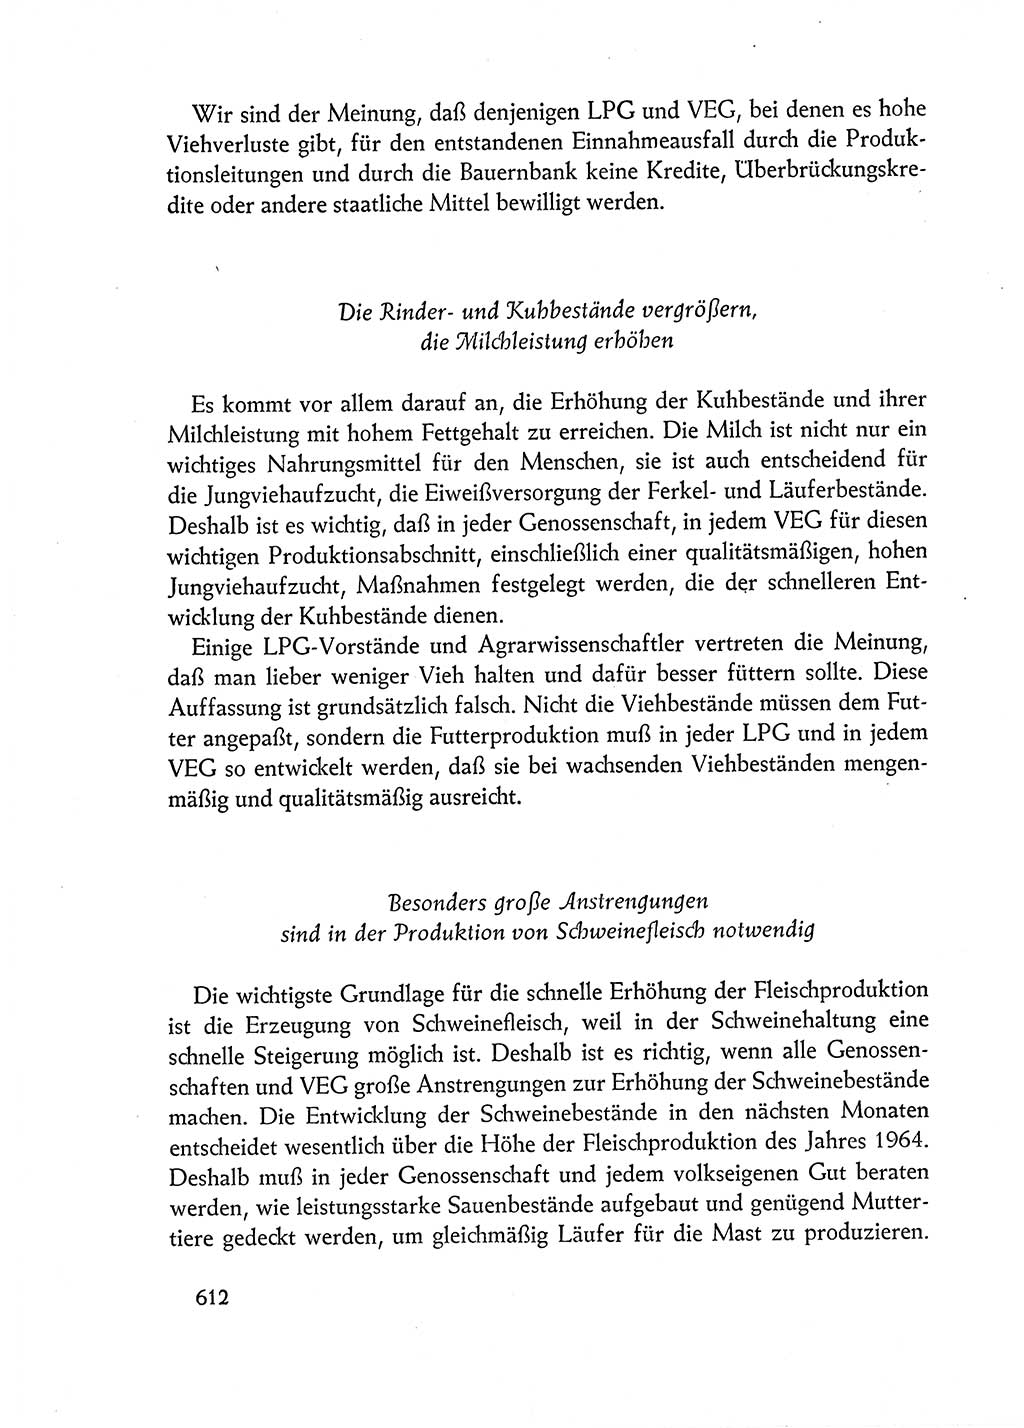 Dokumente der Sozialistischen Einheitspartei Deutschlands (SED) [Deutsche Demokratische Republik (DDR)] 1962-1963, Seite 612 (Dok. SED DDR 1962-1963, S. 612)